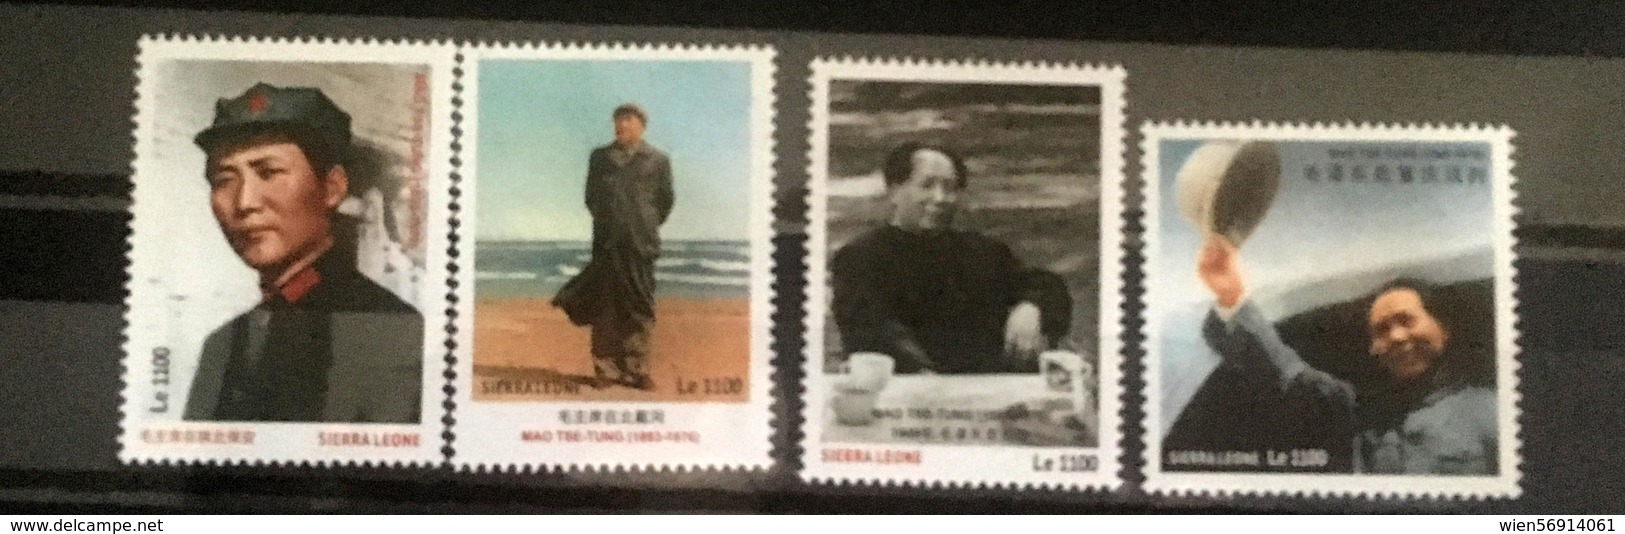 Mao China Sierra Leone - Mao Tse-Tung